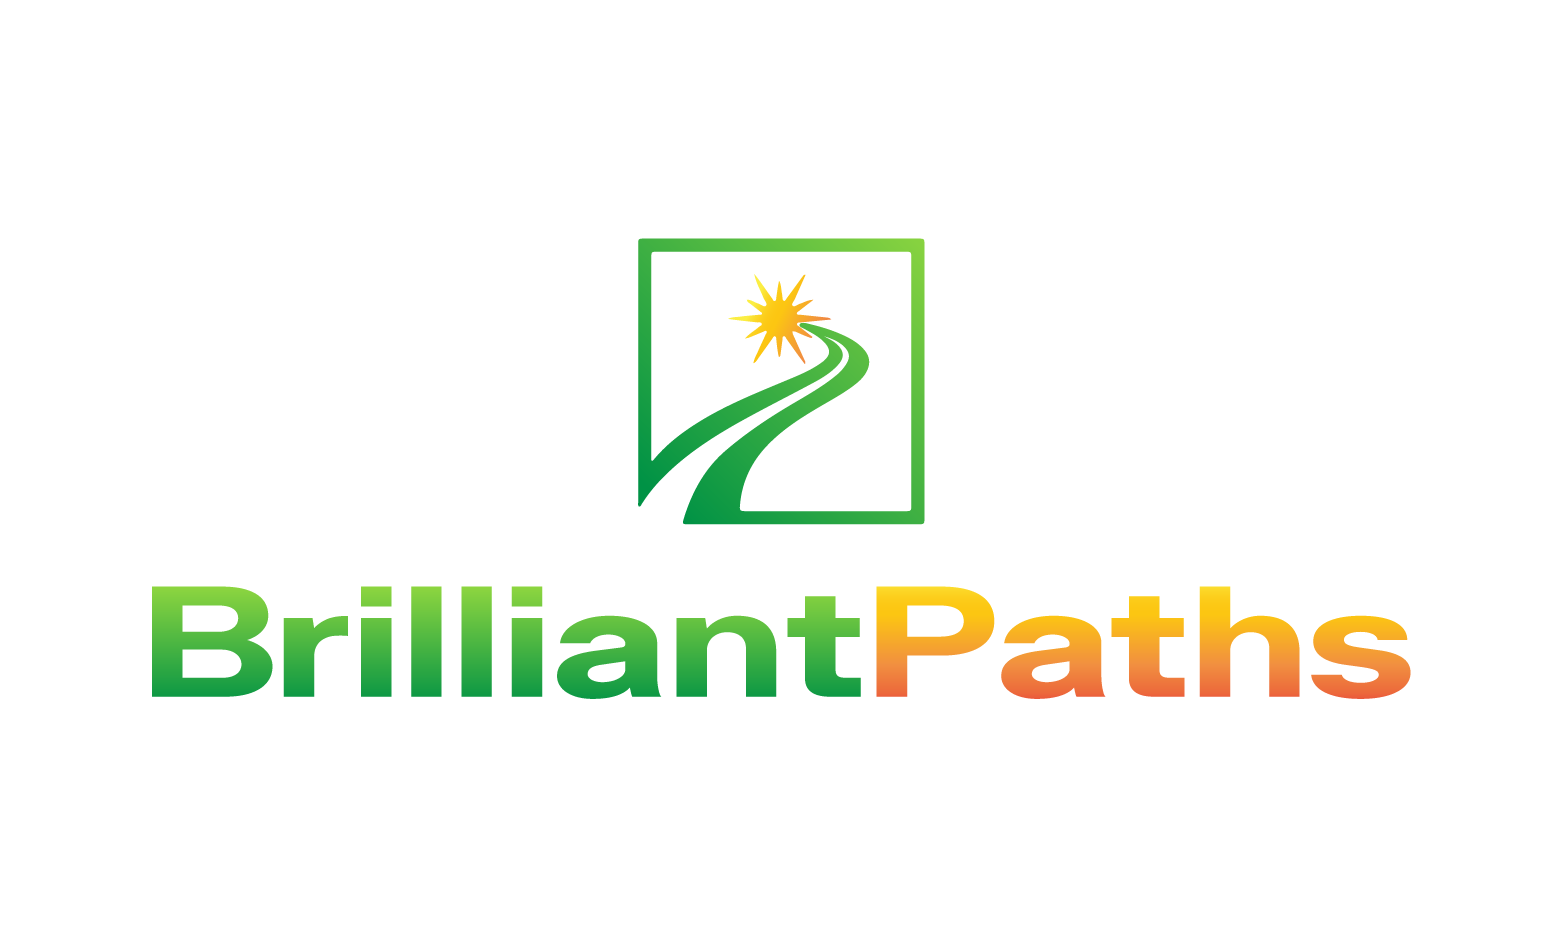 BrilliantPaths.com - Creative brandable domain for sale